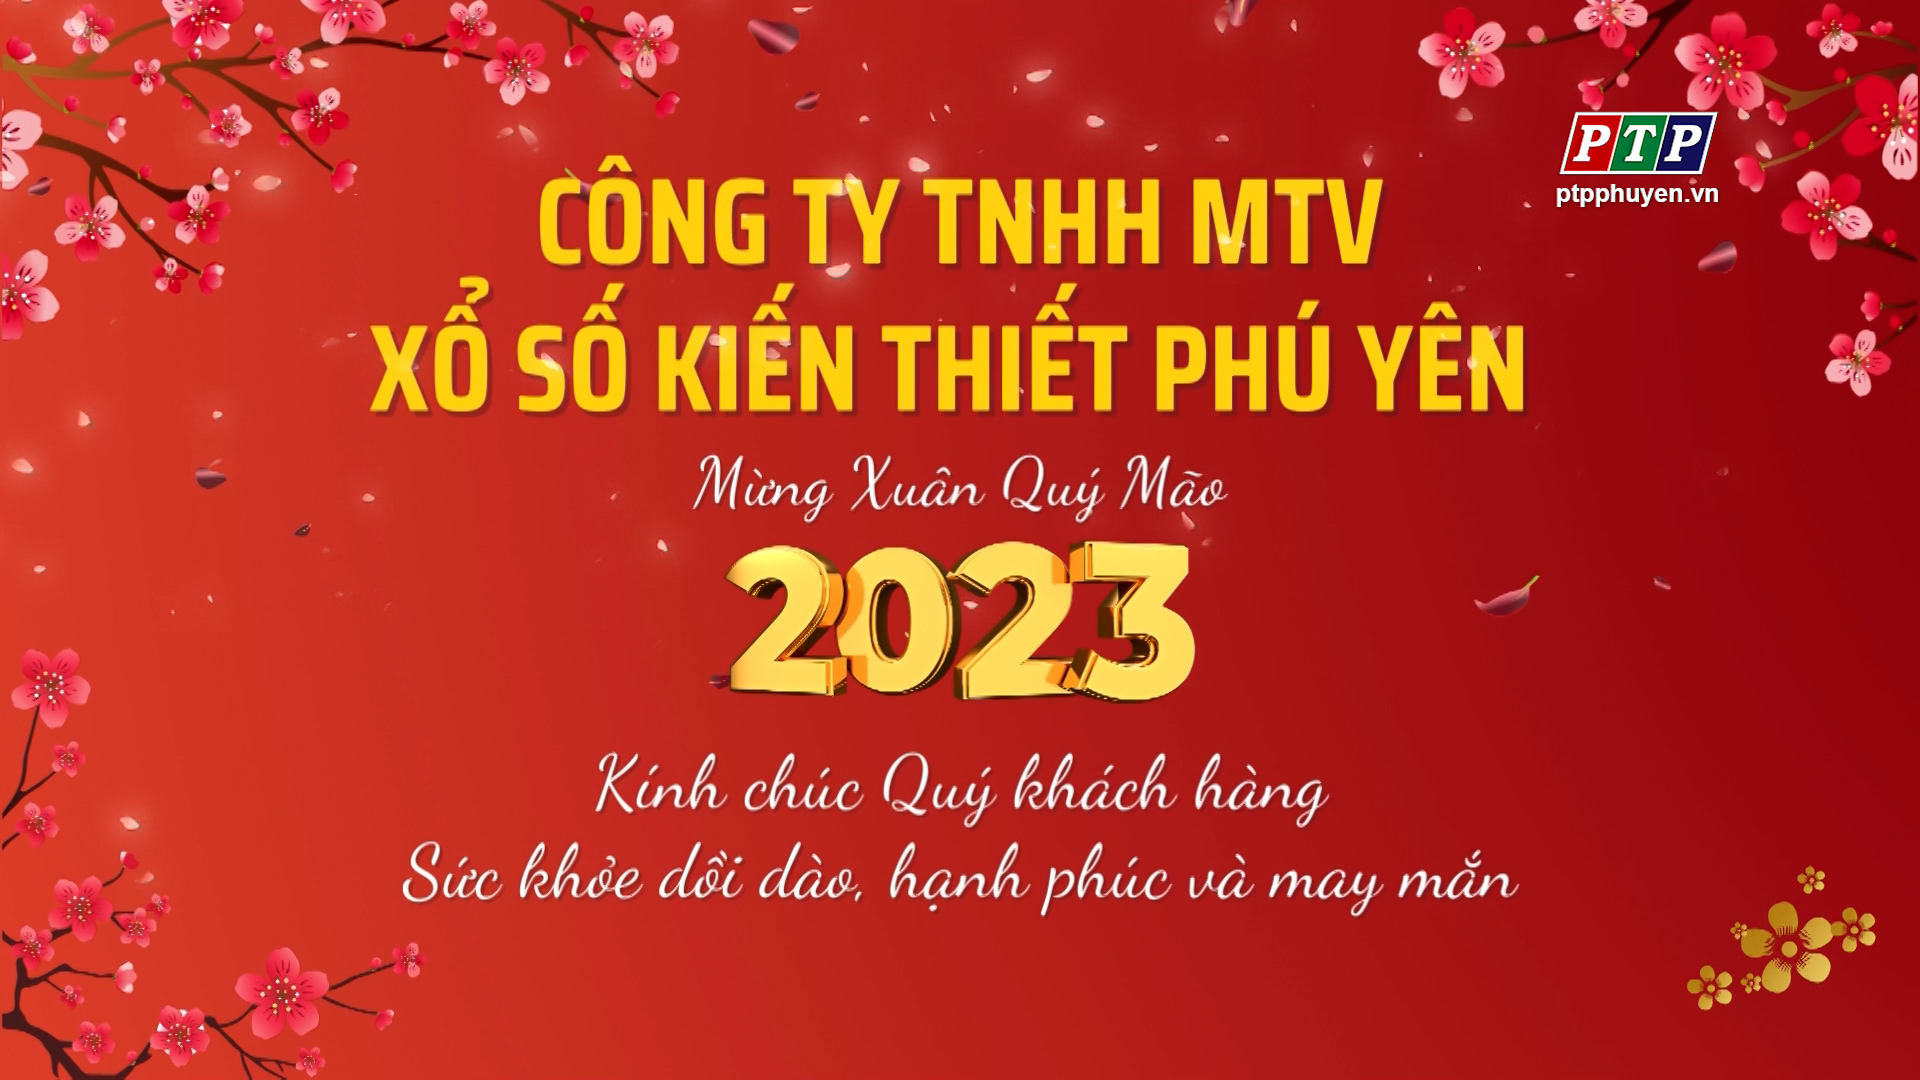 Công TY TNHH MTV Sổ Xố Kiến Thiết Phú Yên Chúc Mừng Năm Mới 2023